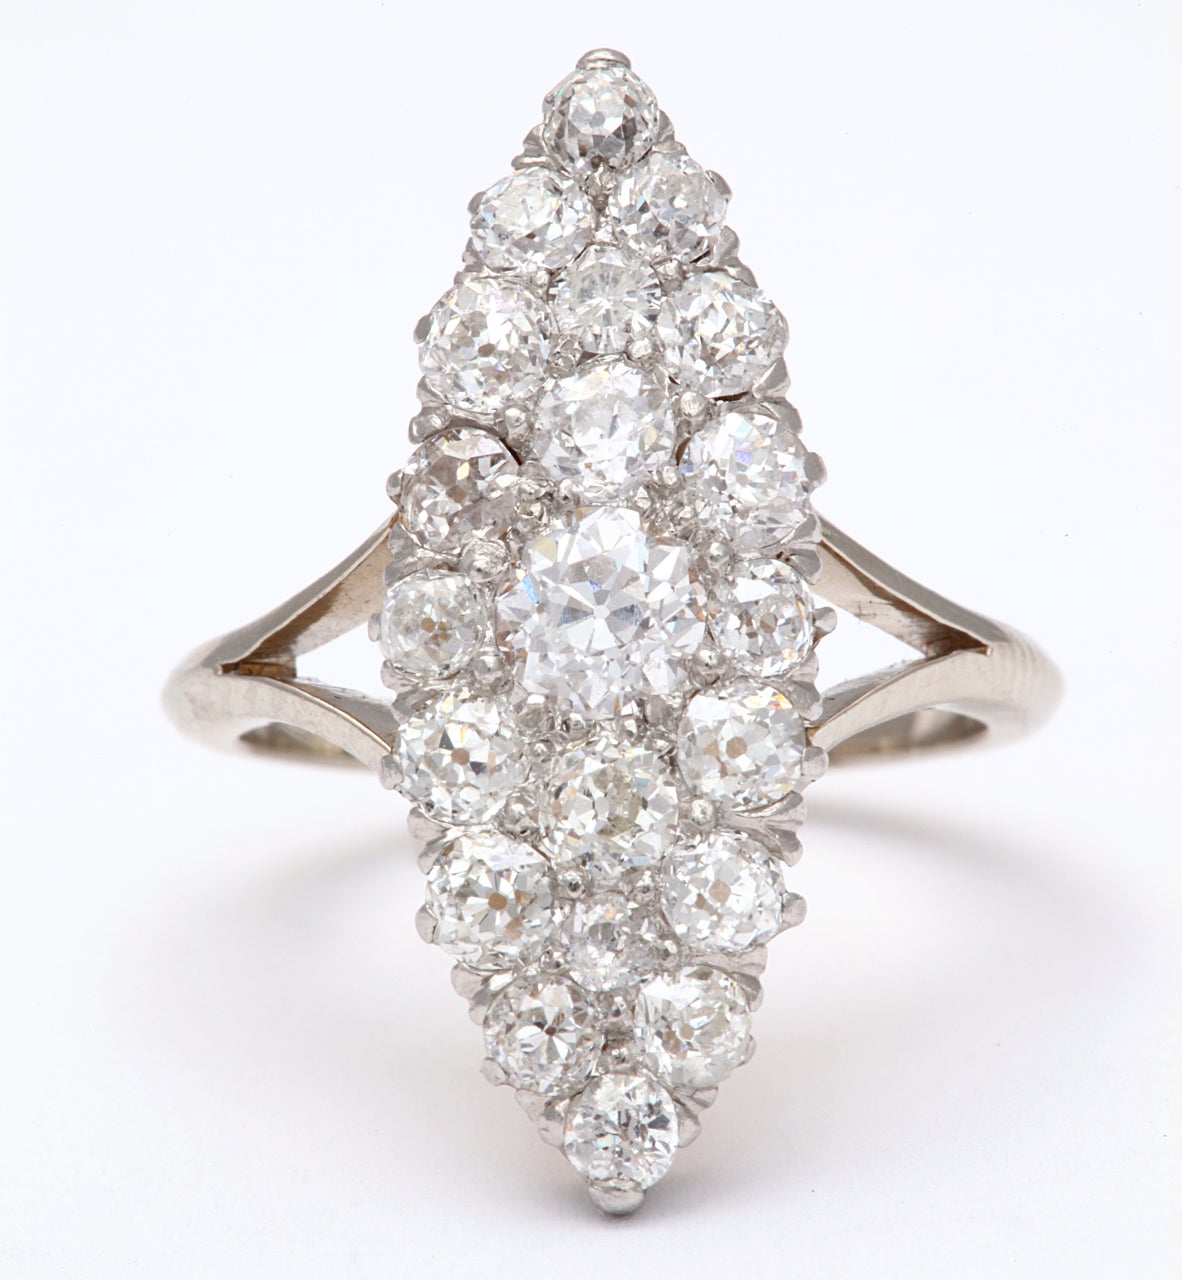 Ein wahrhaft brillanter Cluster aus weißen Diamanten aus alten Minen unterscheidet diesen Ring von den anderen Ringen dieses Stils.  Die Diamanten sind in einer Marquise-Form gefasst.  Sie sind eine Hommage an das Glitzern der edwardianischen Ära.